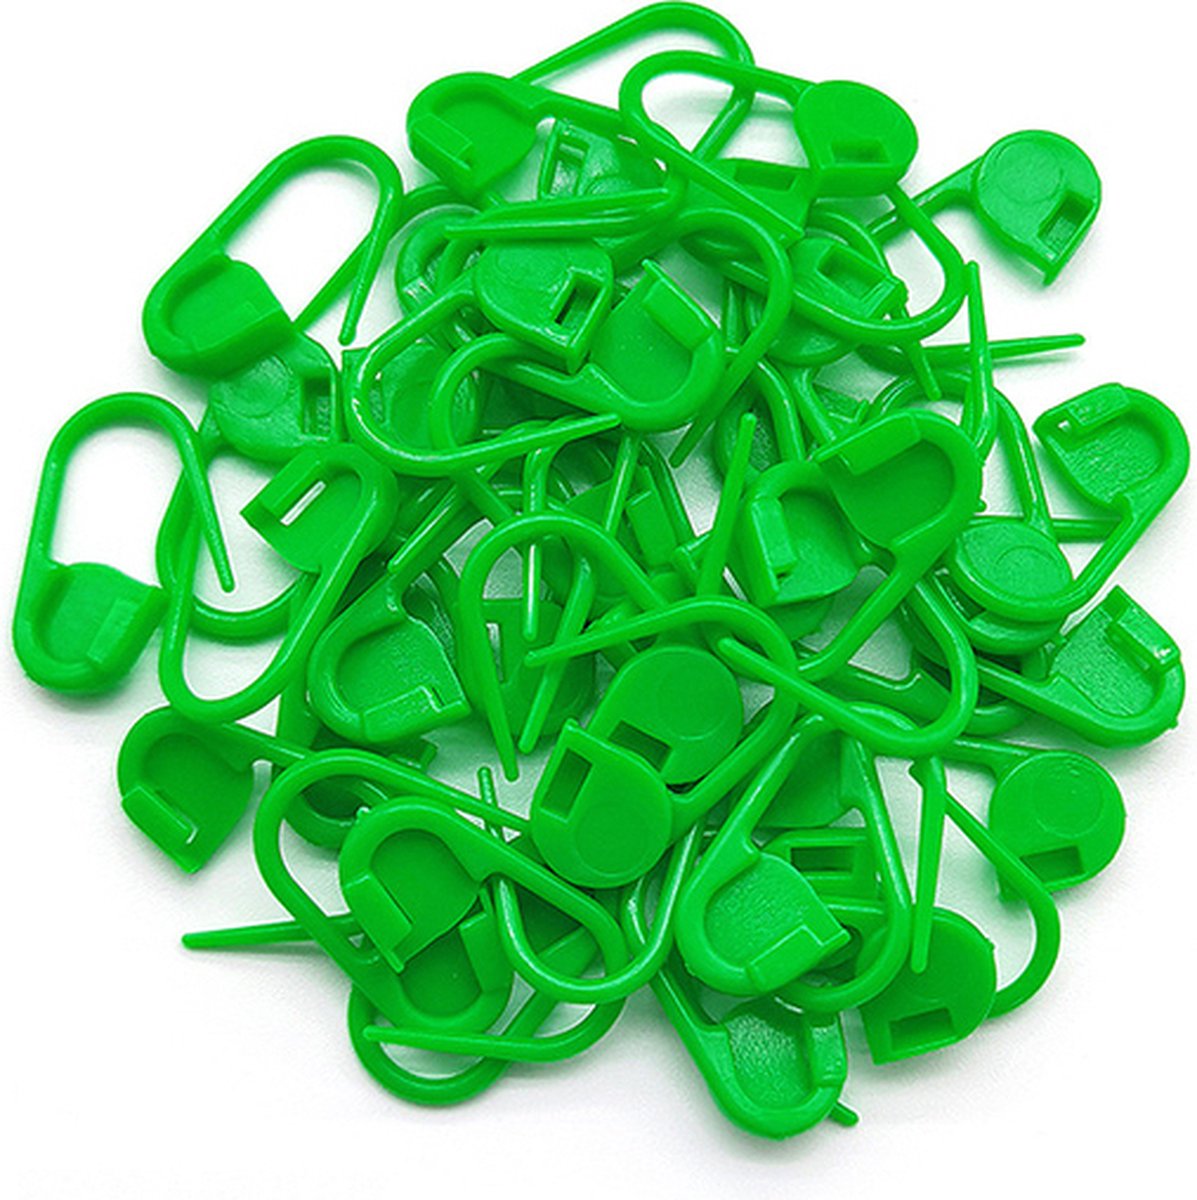 Plastic veiligheidsspelden - 50 stuks - veiligheidsspelden klein - Groen